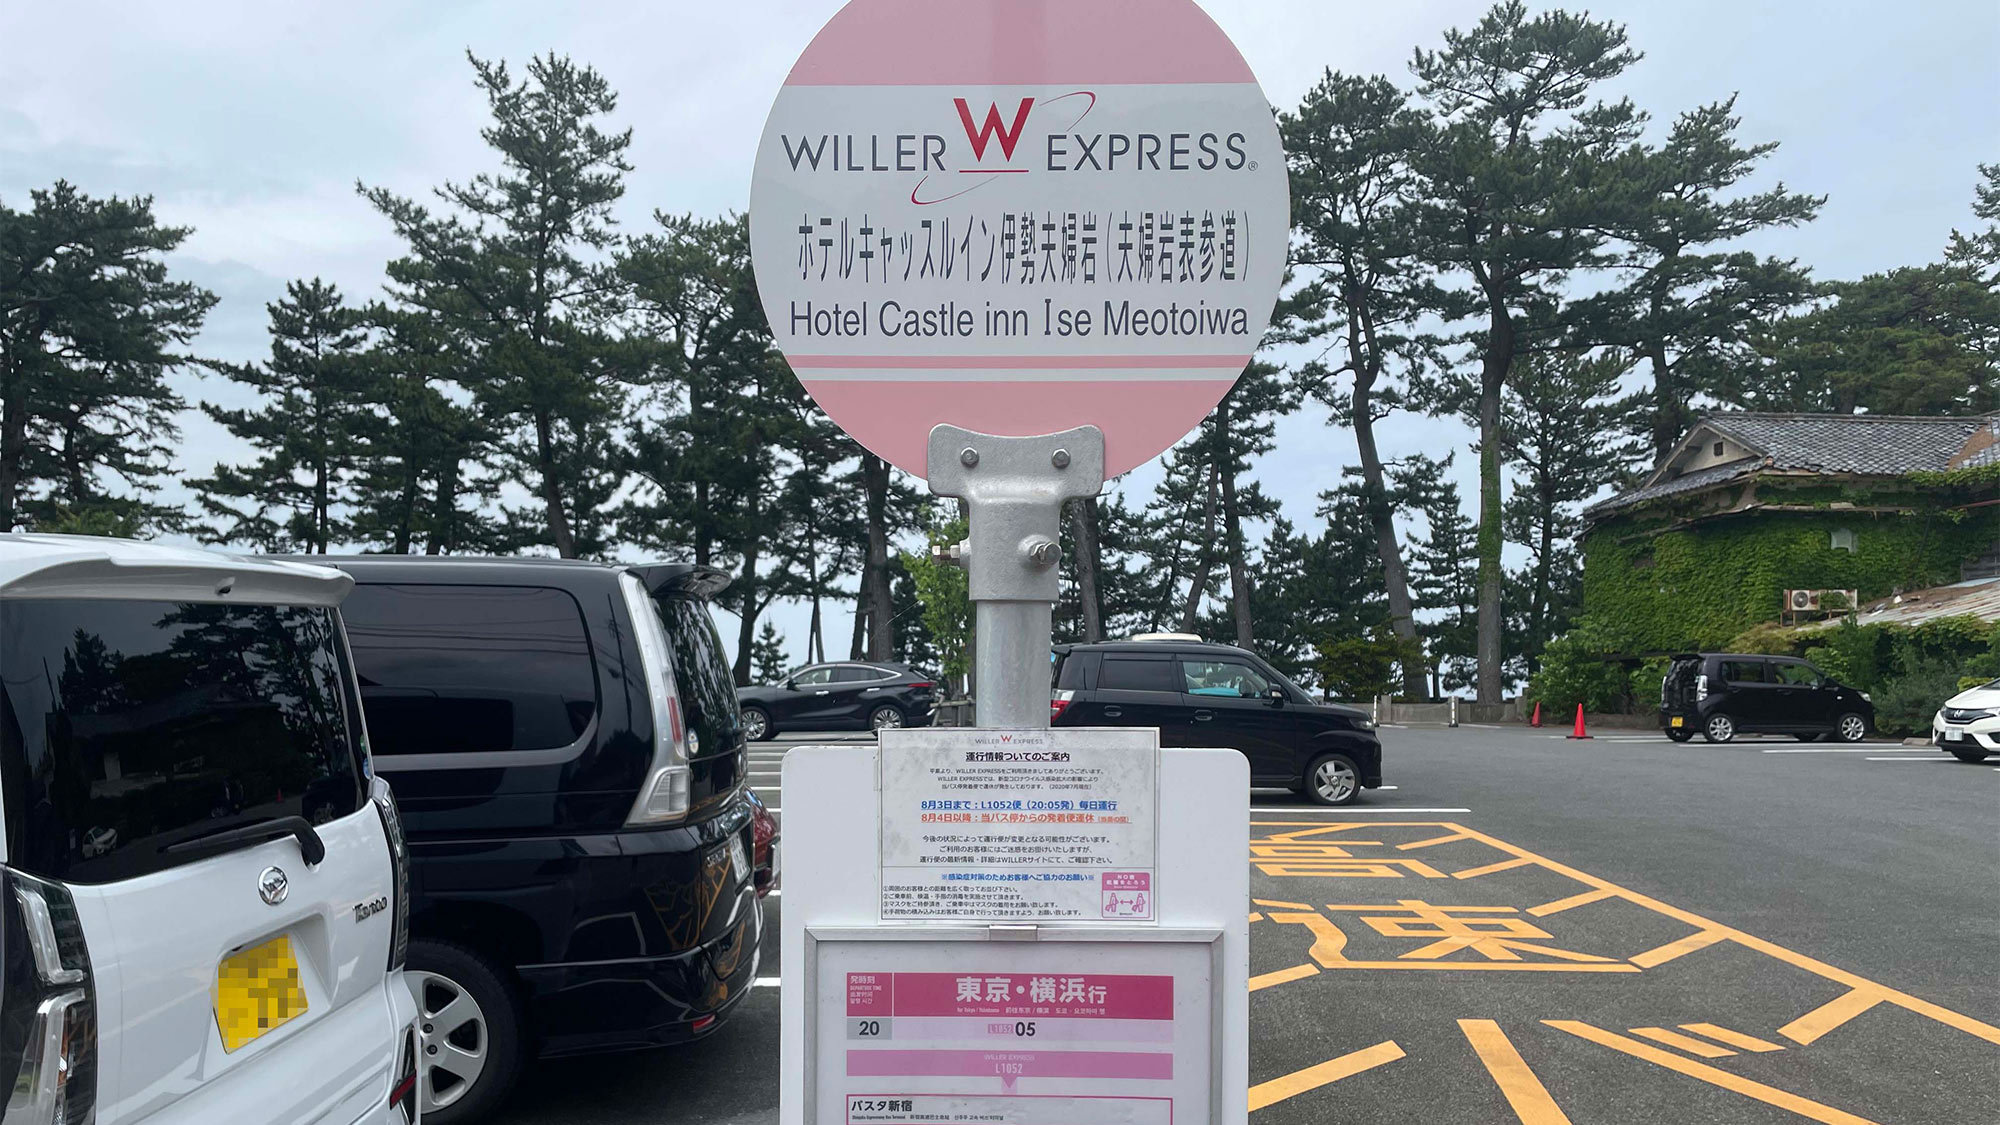 ・Willer高速バス（東京、横浜方面）：ホテルリゾートイン伊勢夫婦岩バス停より徒歩15分